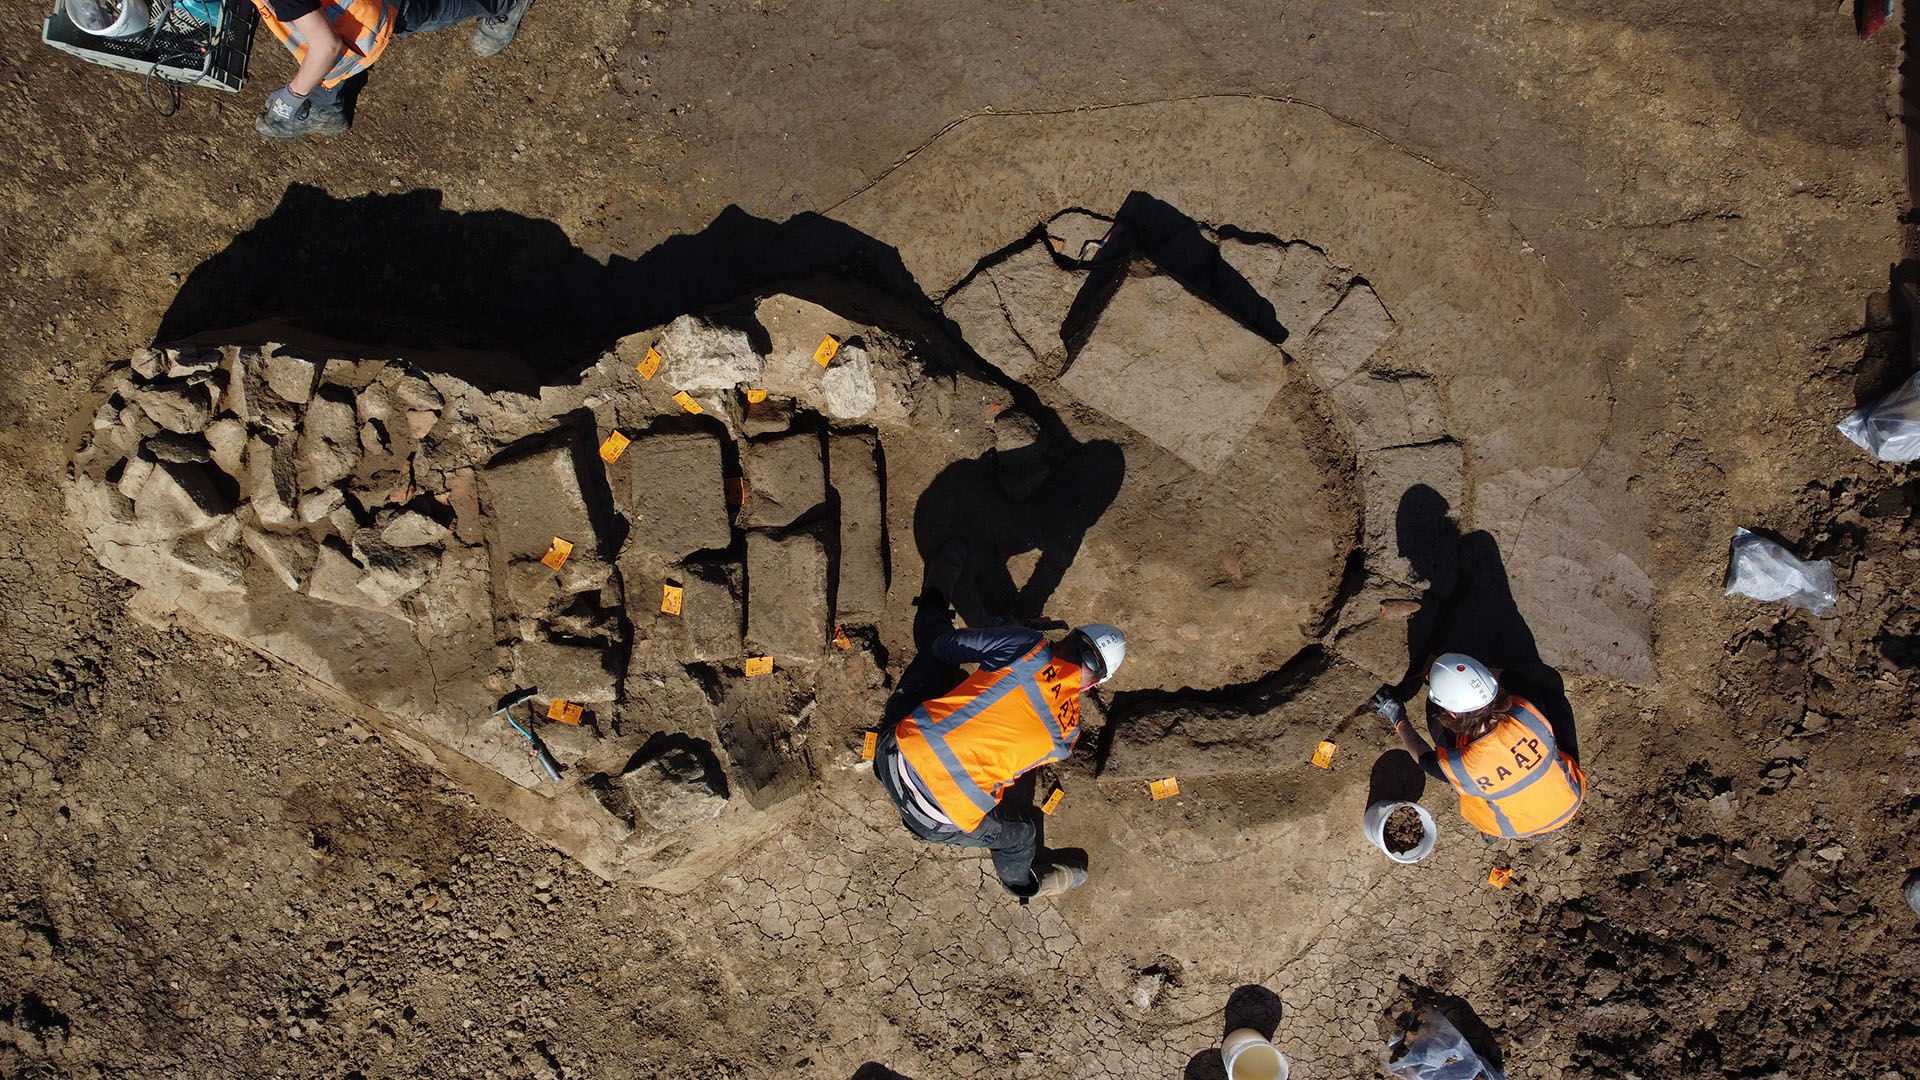 Archäologen haben im niederländischen Herwen-Hemelingeine fast vollständig erhaltene römische Tempelanlage gefunden. | Archäologisches Forschungsinstitut RAAP/dpa